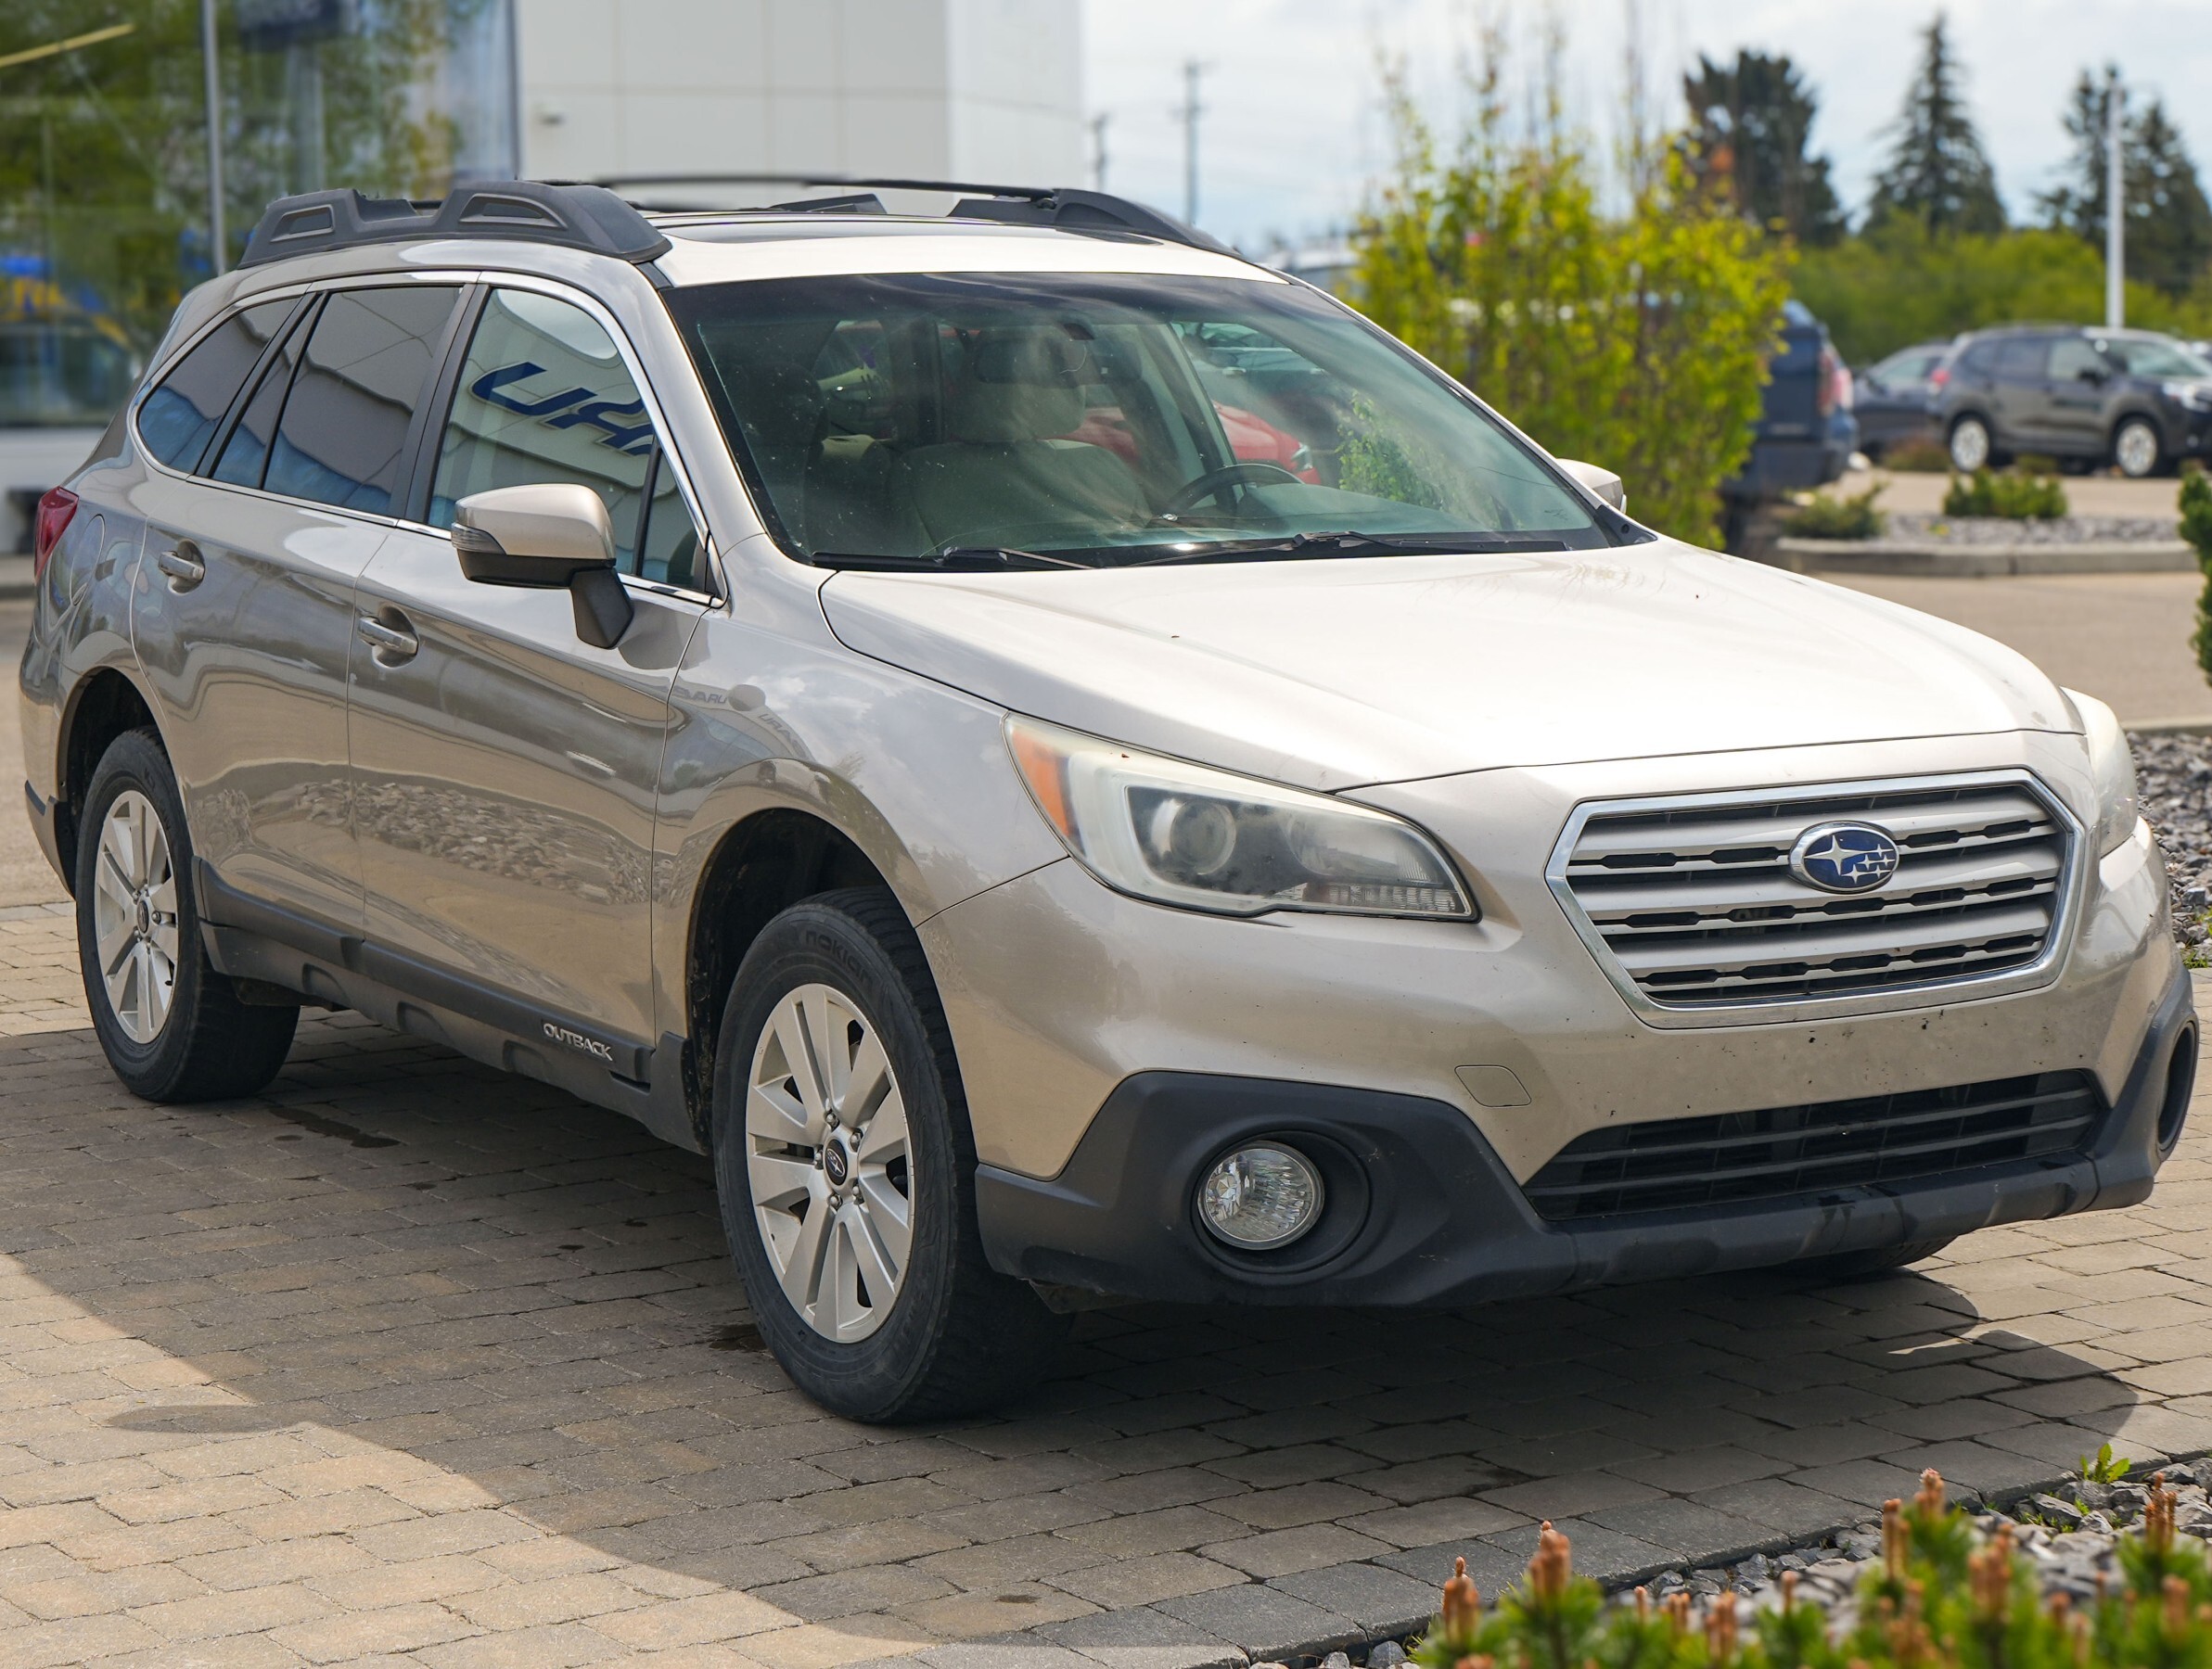 2015 Subaru Outback 2.5i Touring Package, AWD, CVT, Sunroof, Alloys